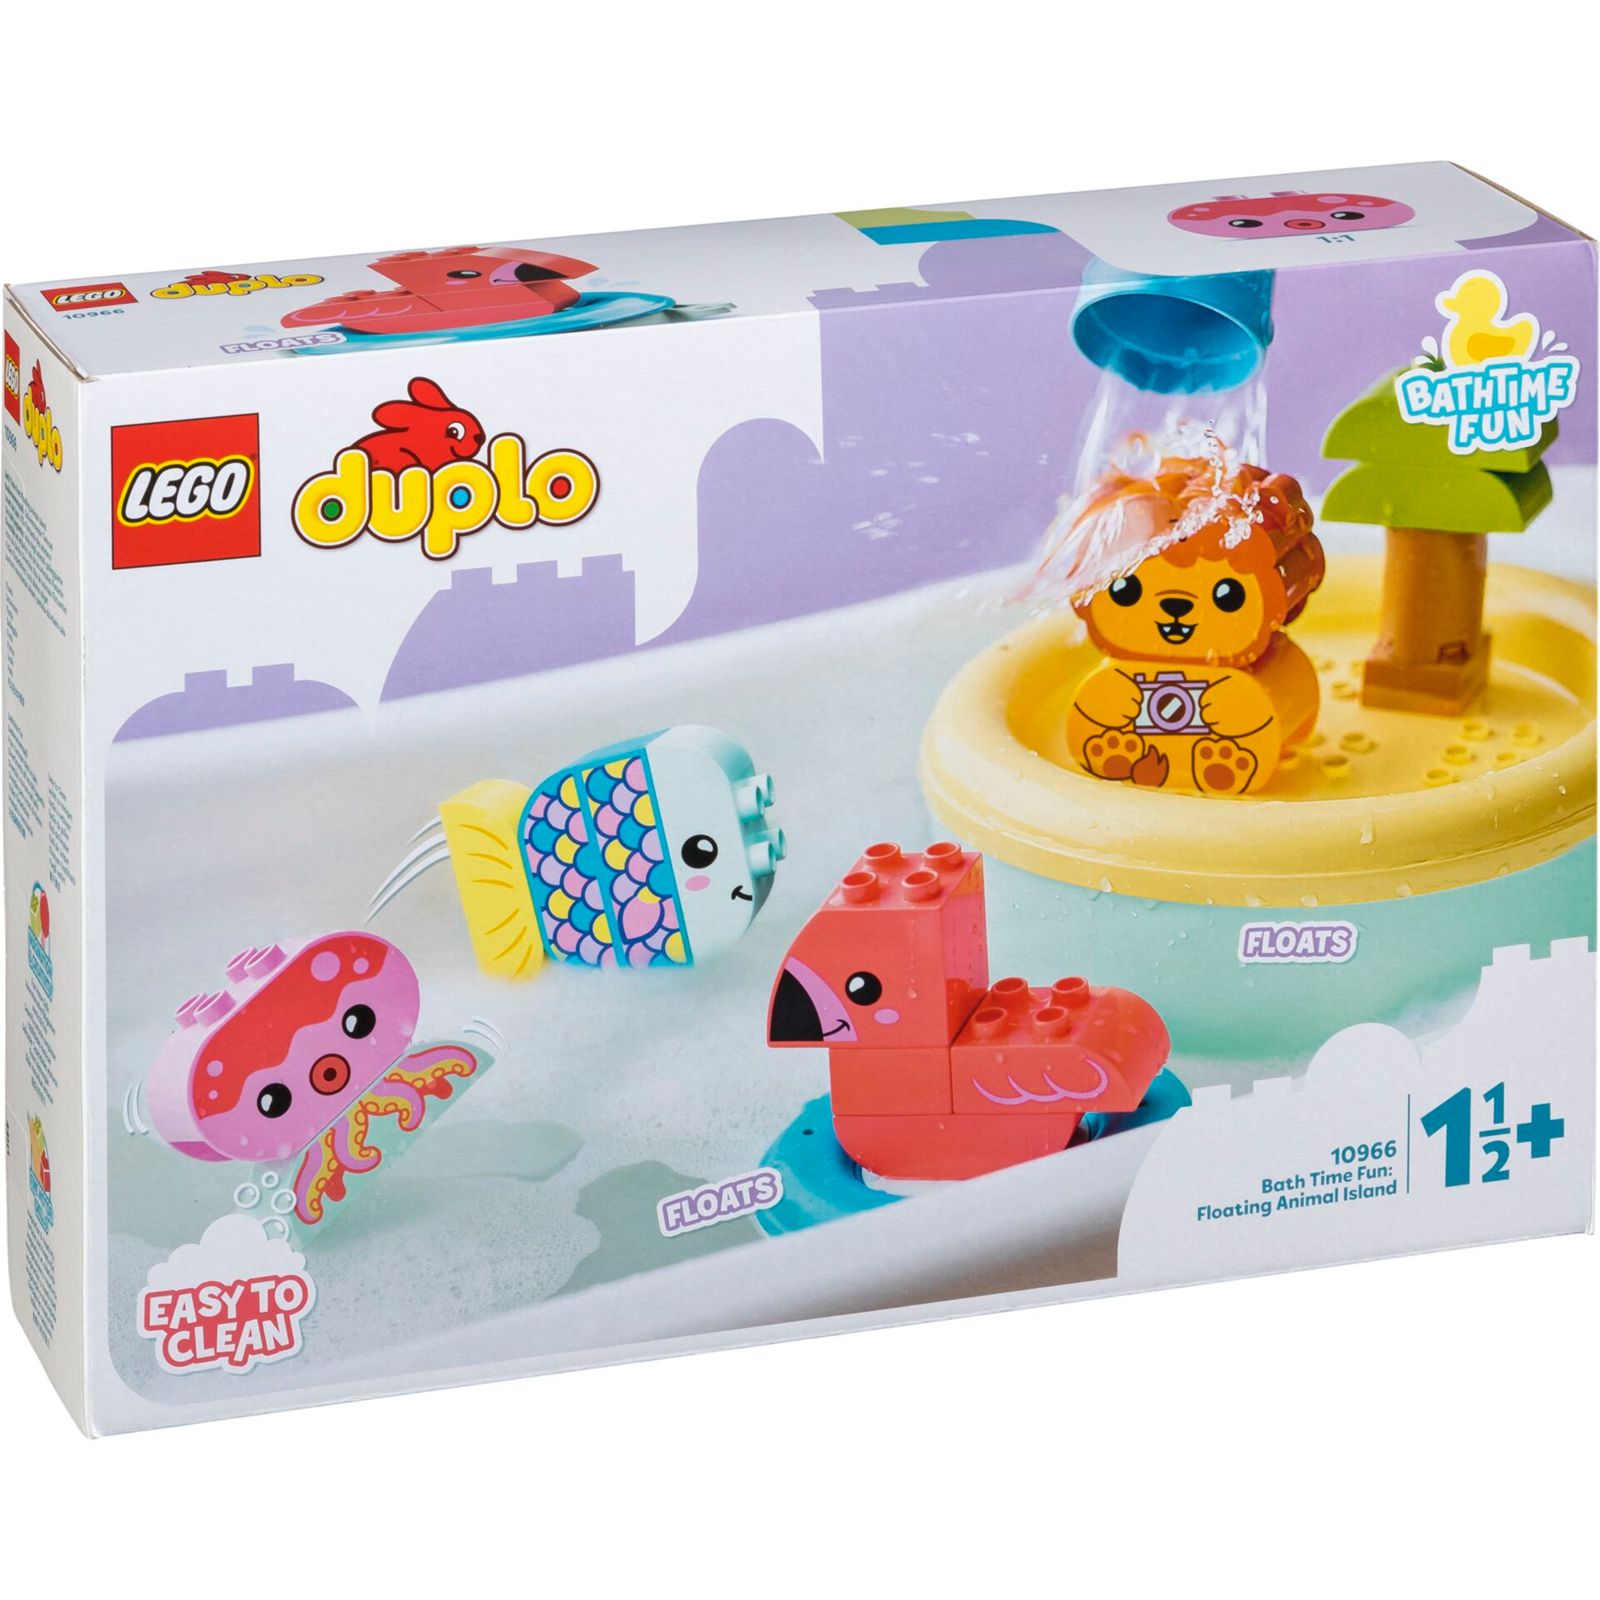 LEGO Duplo 10966 Bath Time Fun: Floating Animal Island